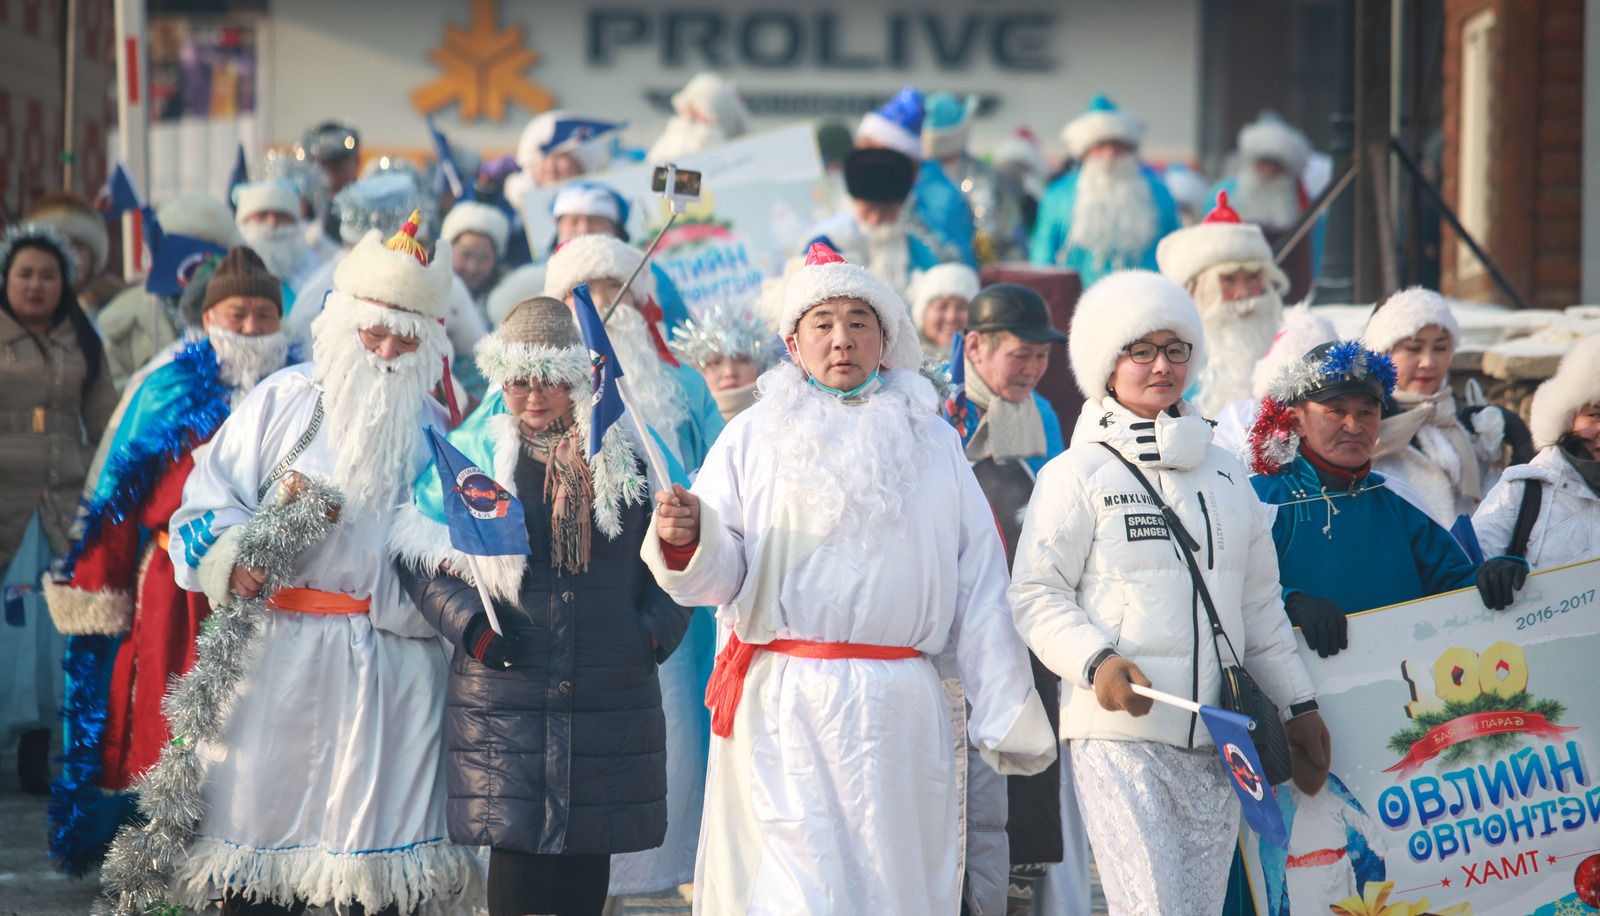 Өвлийн өвгөн, цасан охины парад боллоо #БаянголДүүрэг